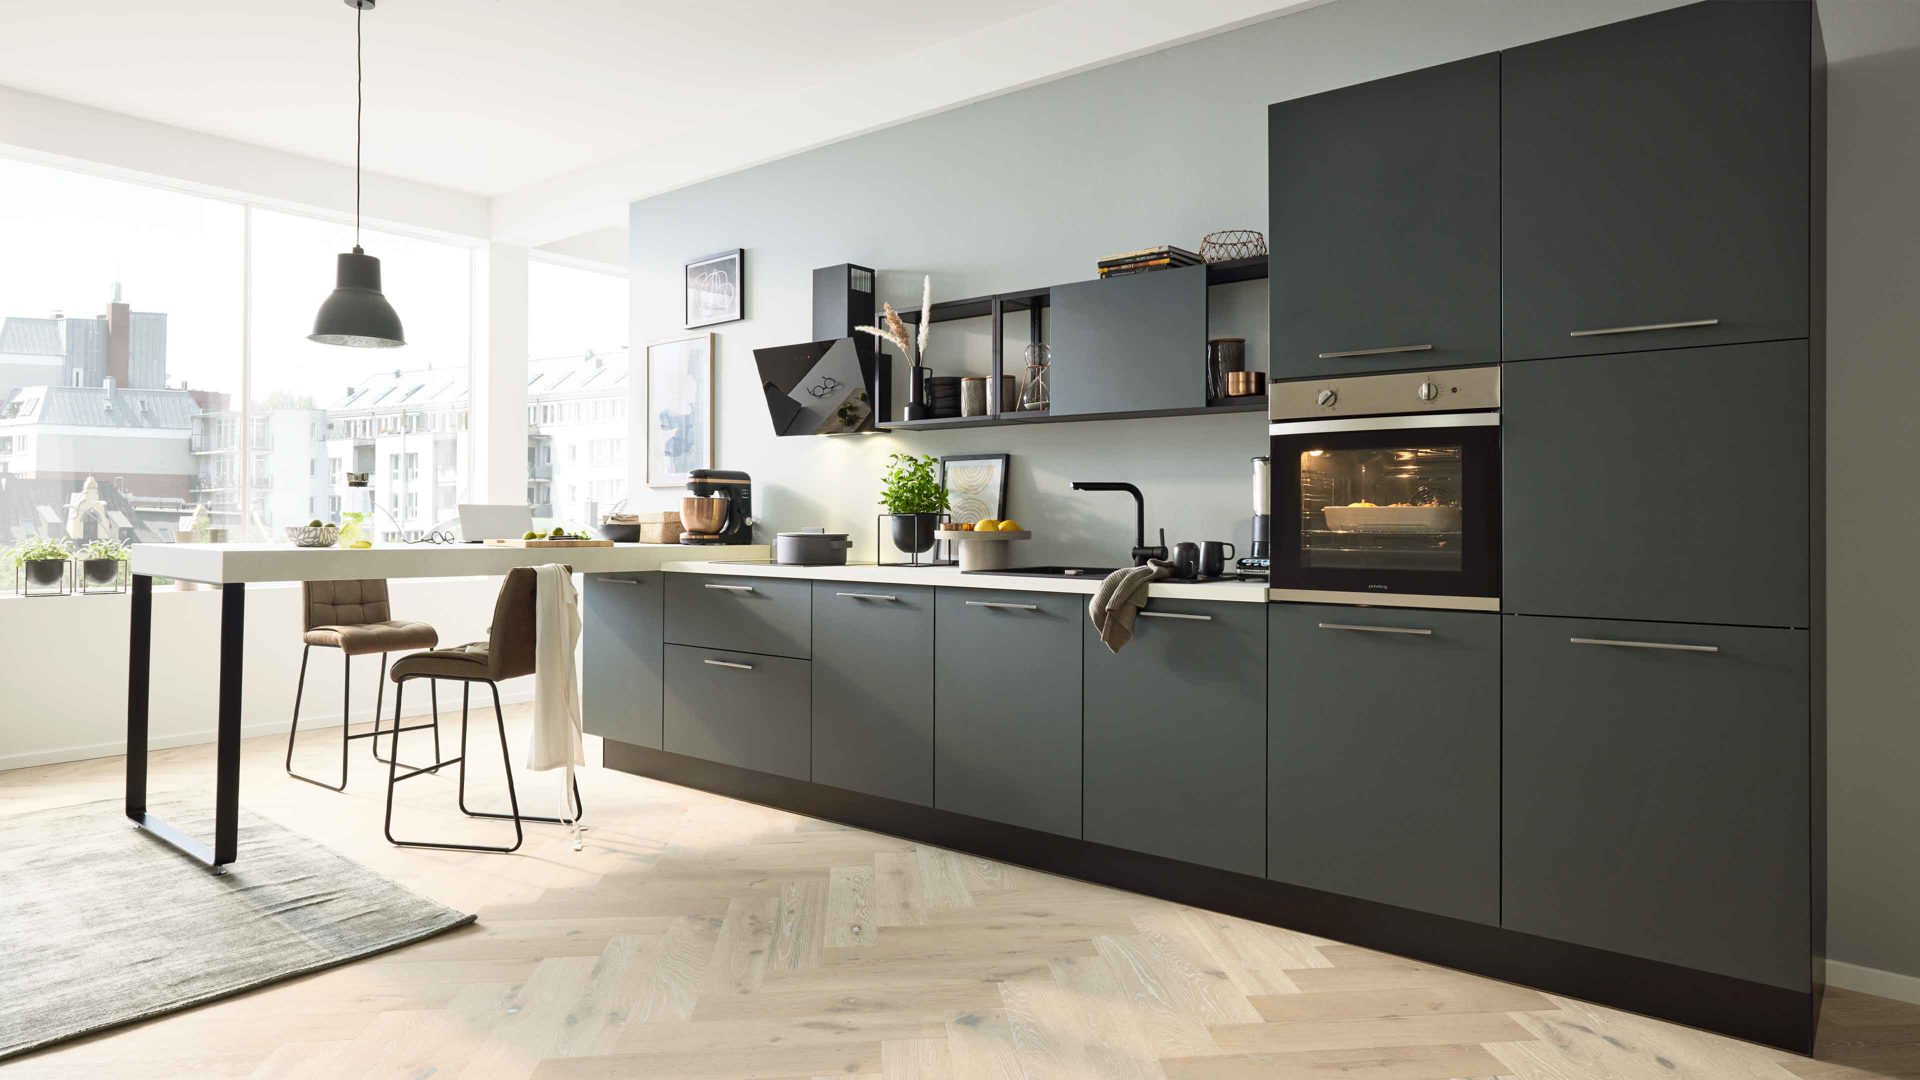 Einbauküche Interliving aus Holz in Dunkelgrün Interliving Küche Serie 3059 mit privileg Einbaugeräten Black Green - Stellfläche ca. 220 x 480 cm